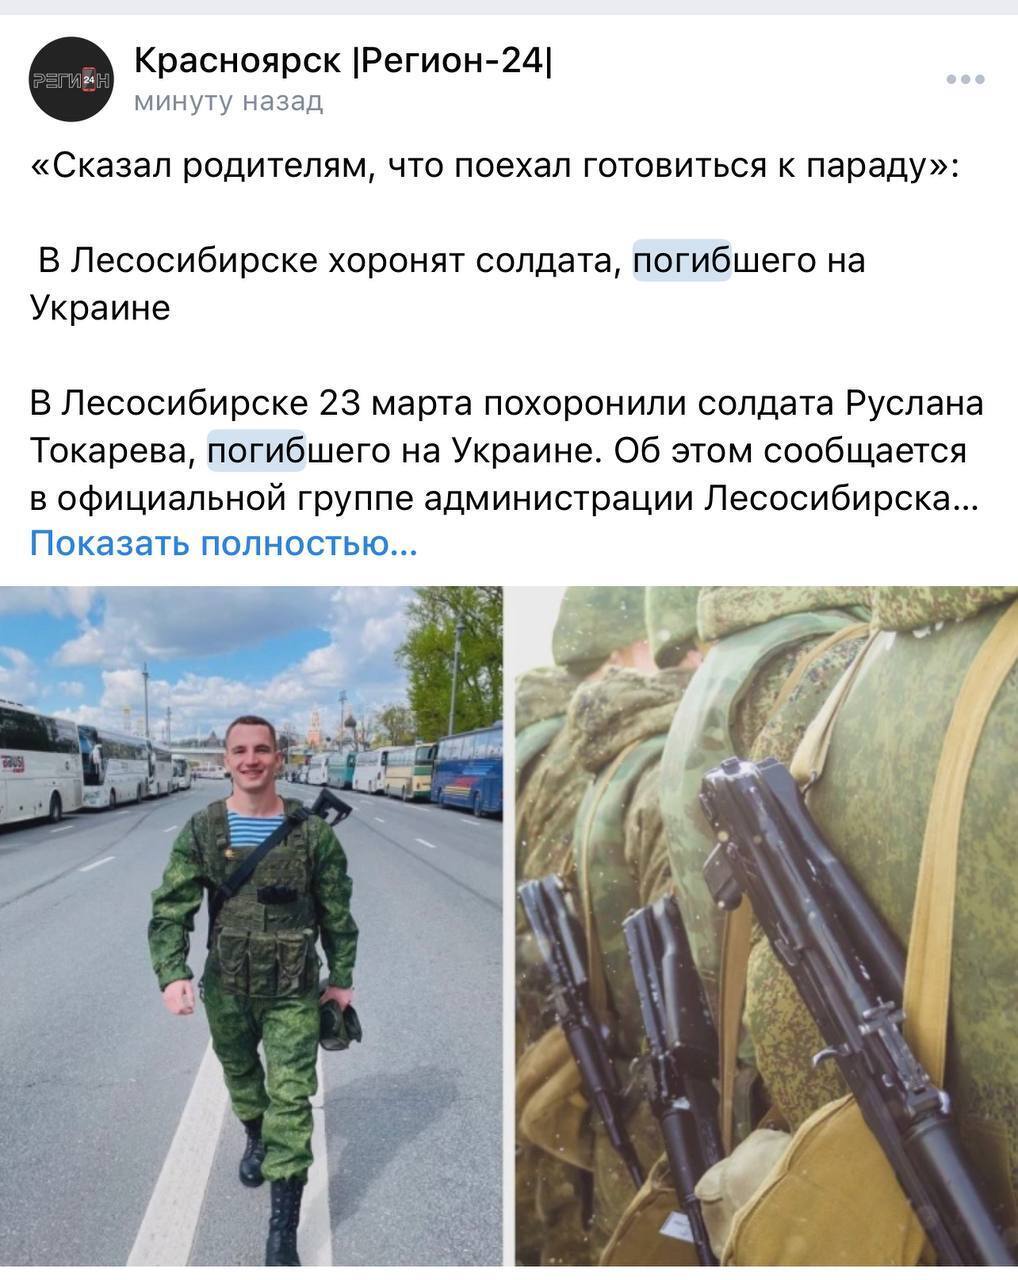 Кремль уличили во лжи о войне с Украиной: некоторые из ликвидированных солдат только окончили школу. Фото